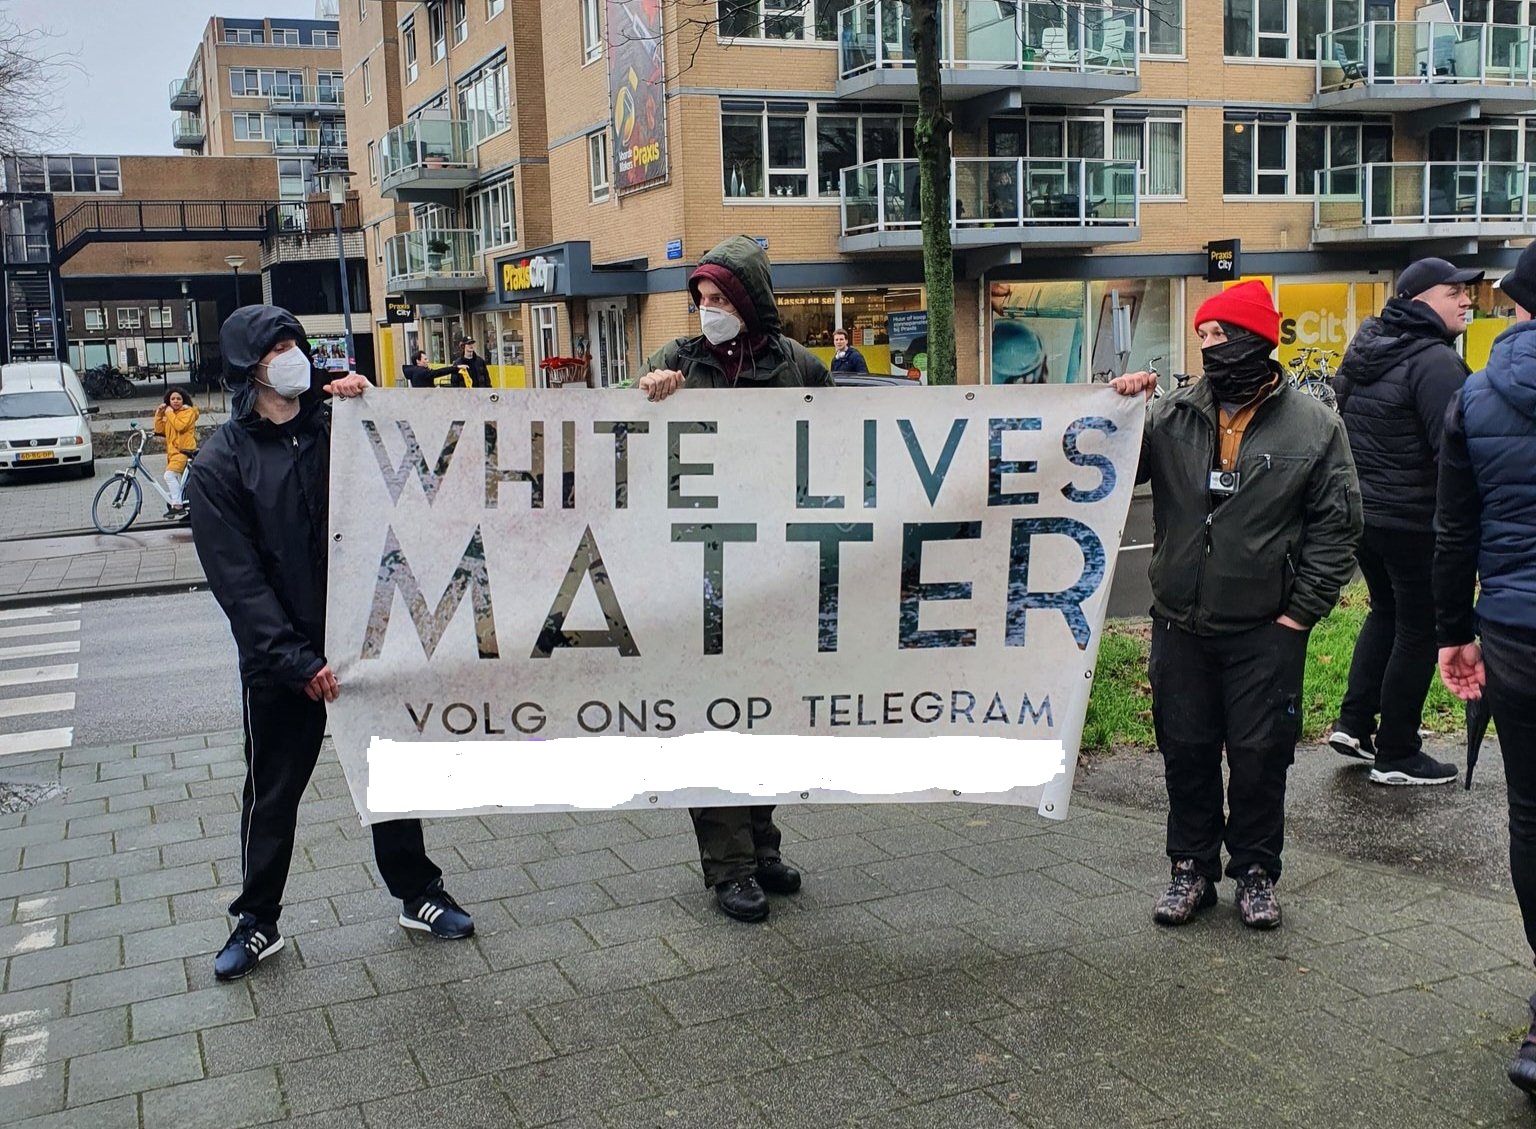 White Lives Matter aanwezig op corona demonstratie Rotterdam, februari 2022 (rechts Daniel Smirnov)